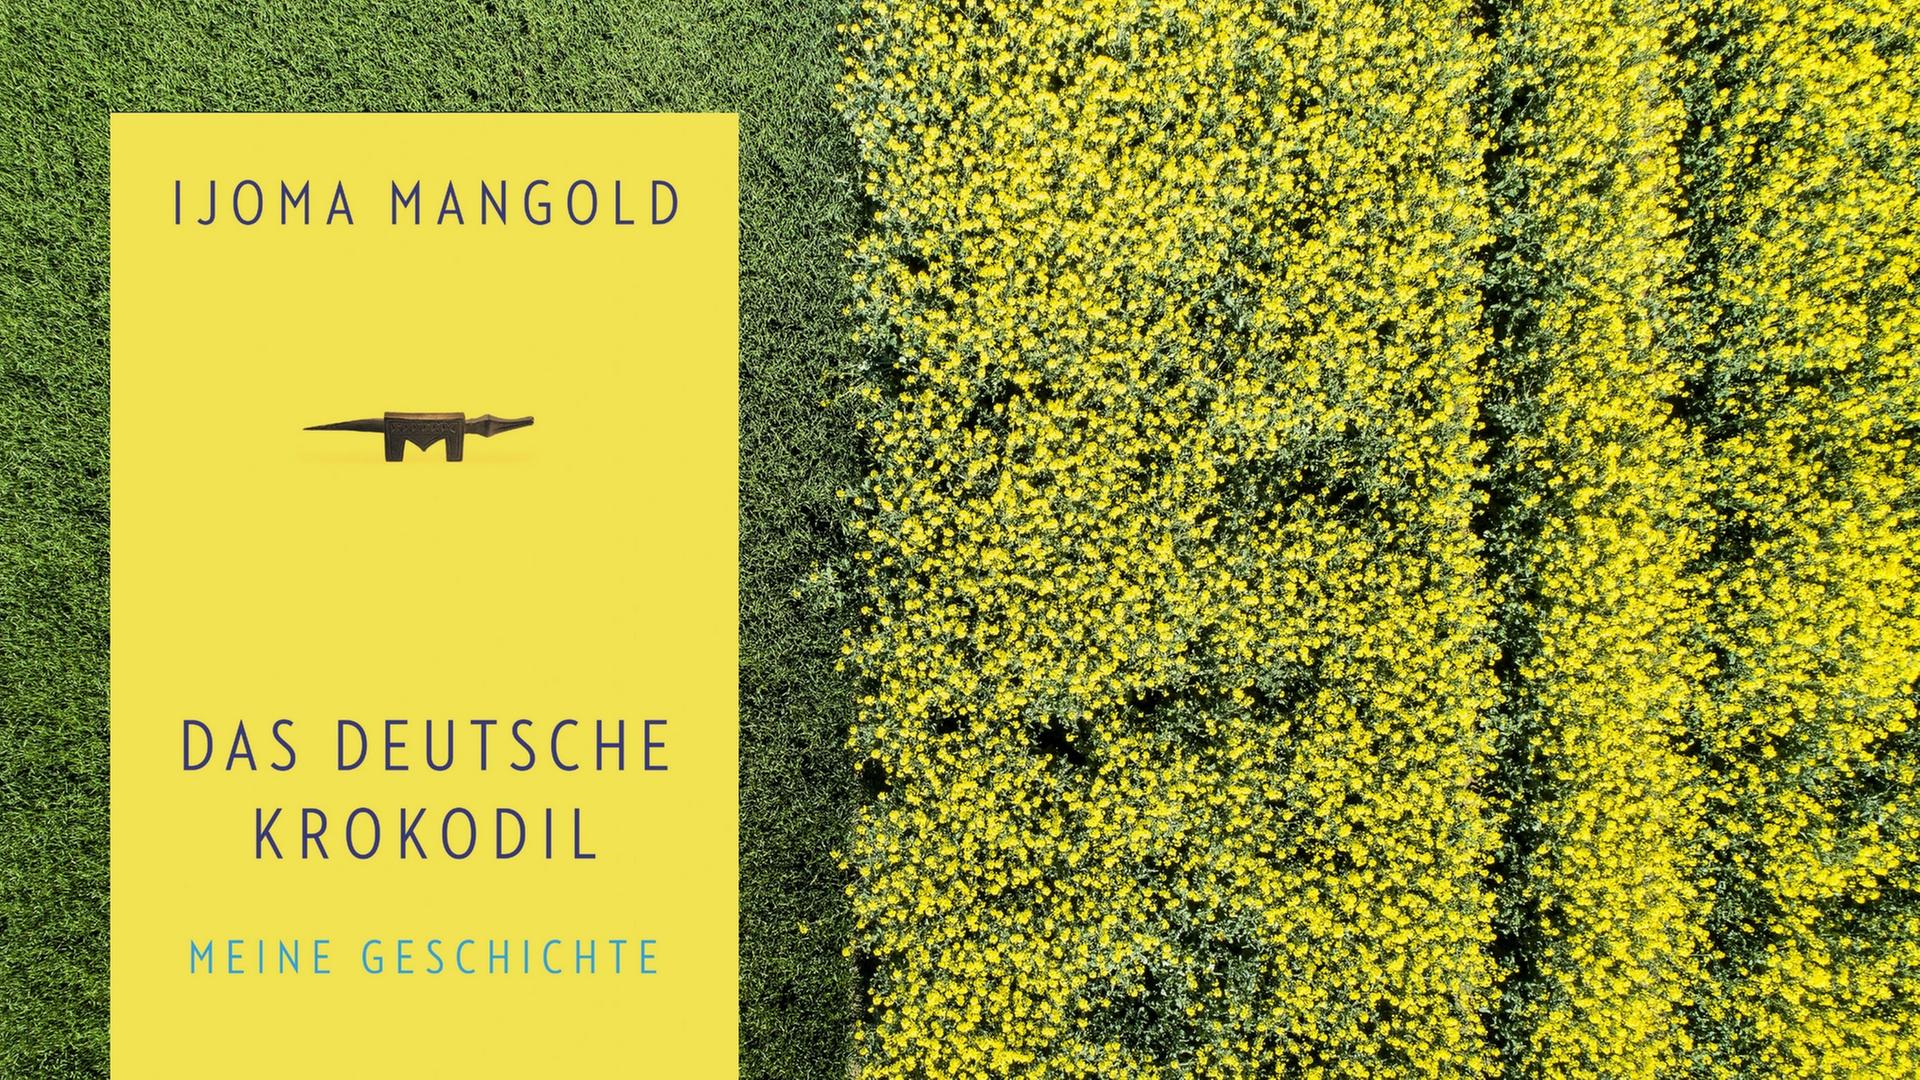 Eine Wiese neben einem Rapsfeld in Bayern von oben. darauf platziert das Cover des Buches "Das Deutsche Krokodil"